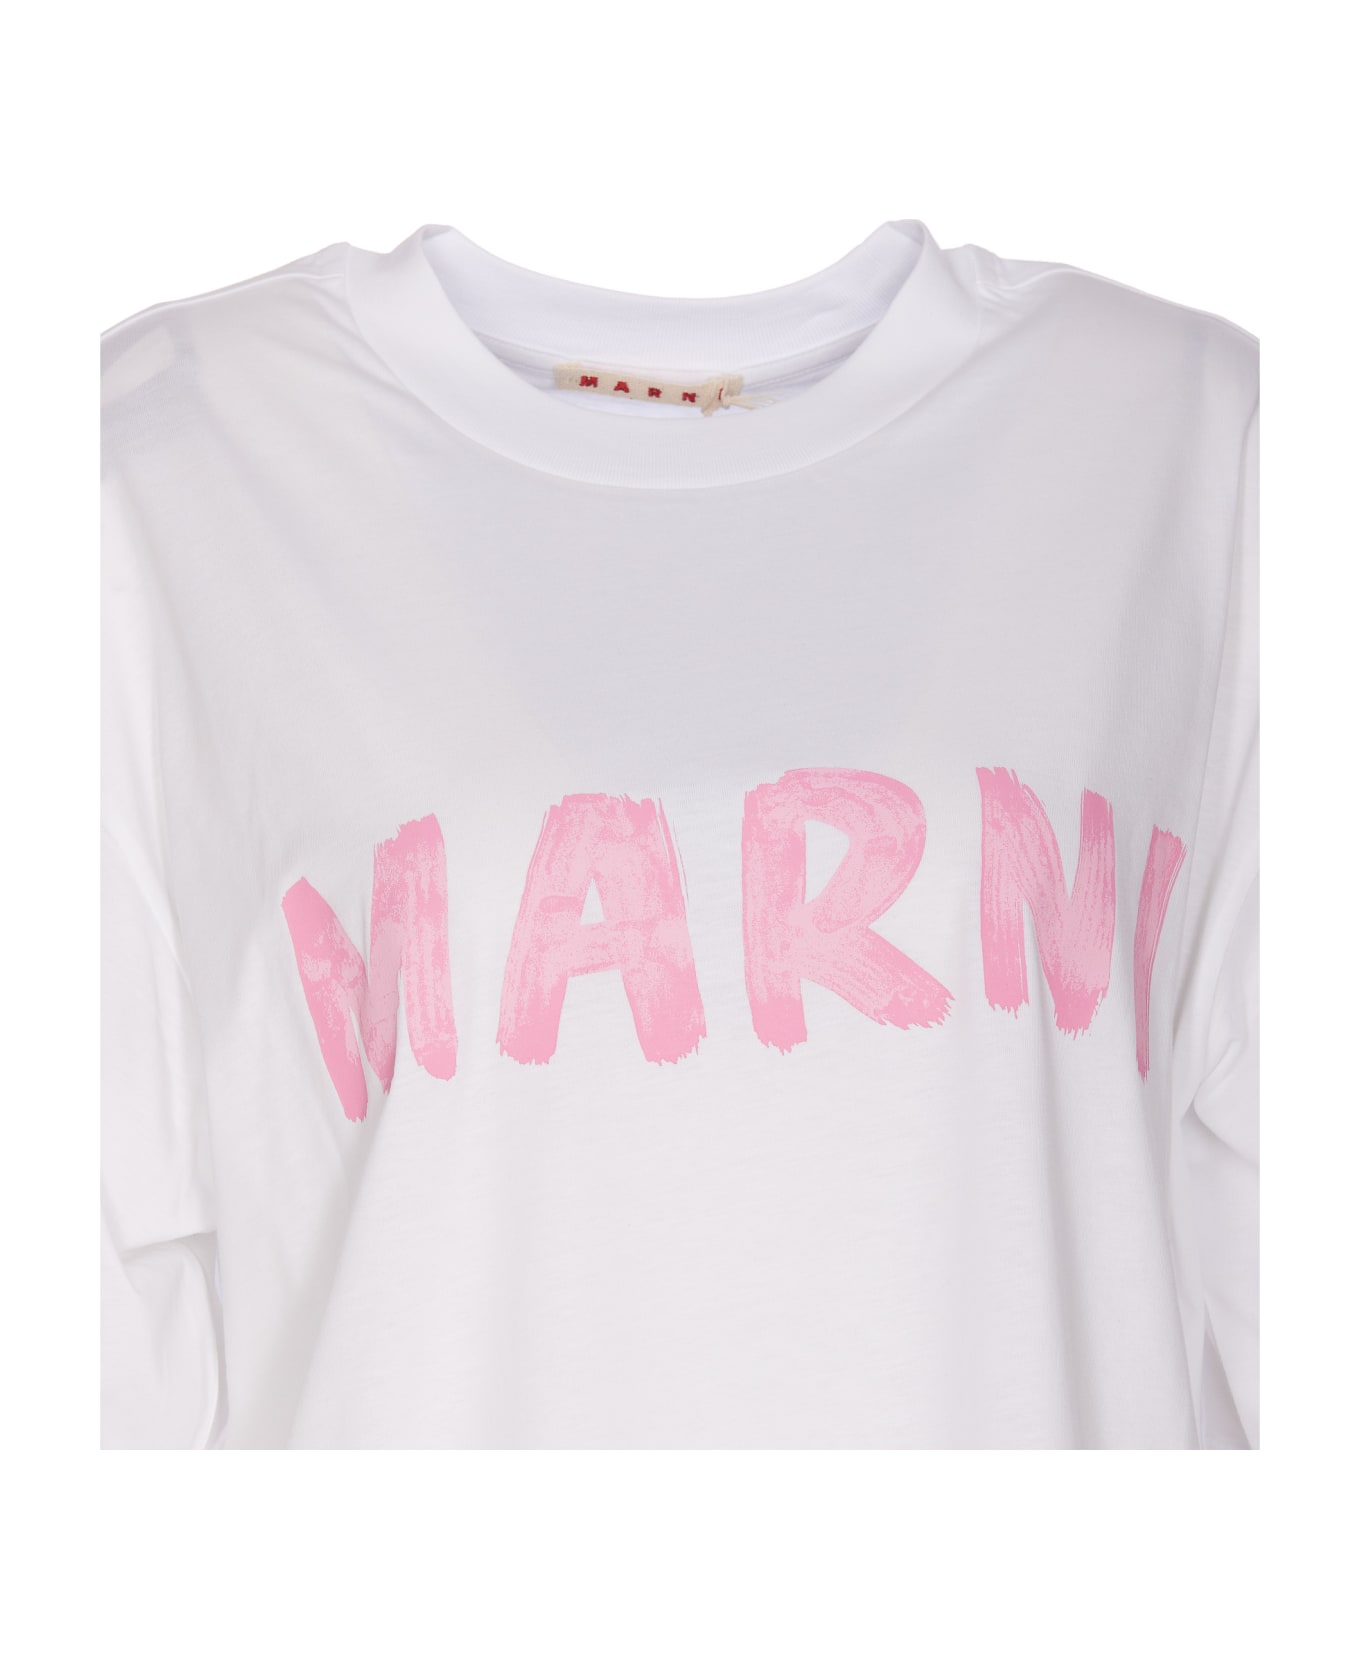 Marni Logo T-shirt - White Tシャツ